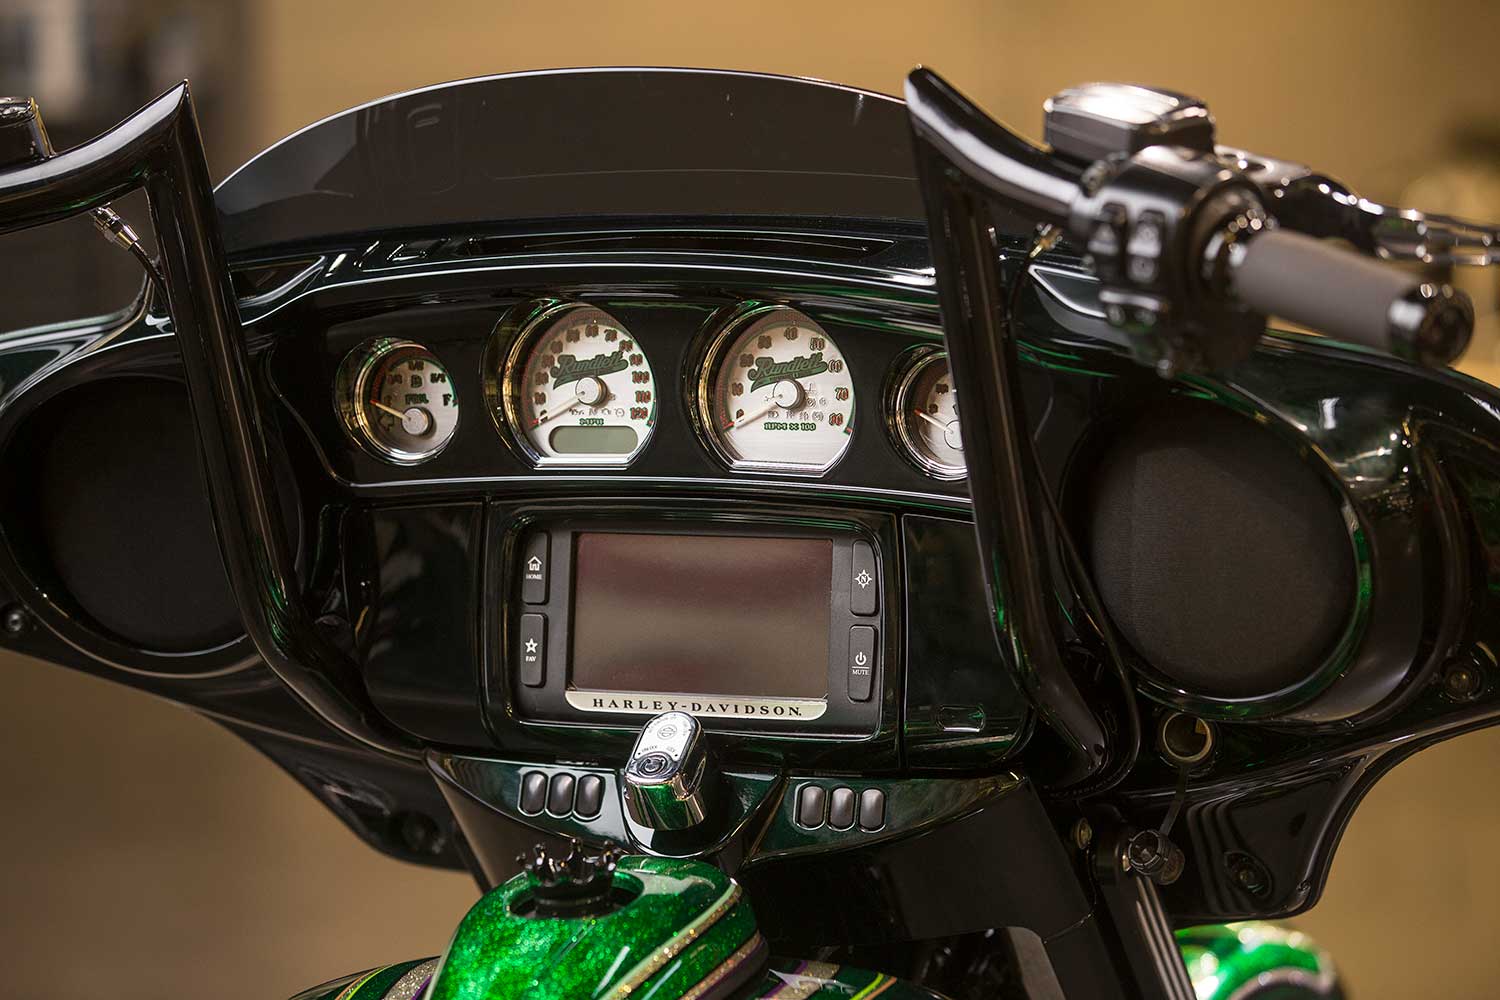 2014 Harley-Davidson Street Glide custom gauges.